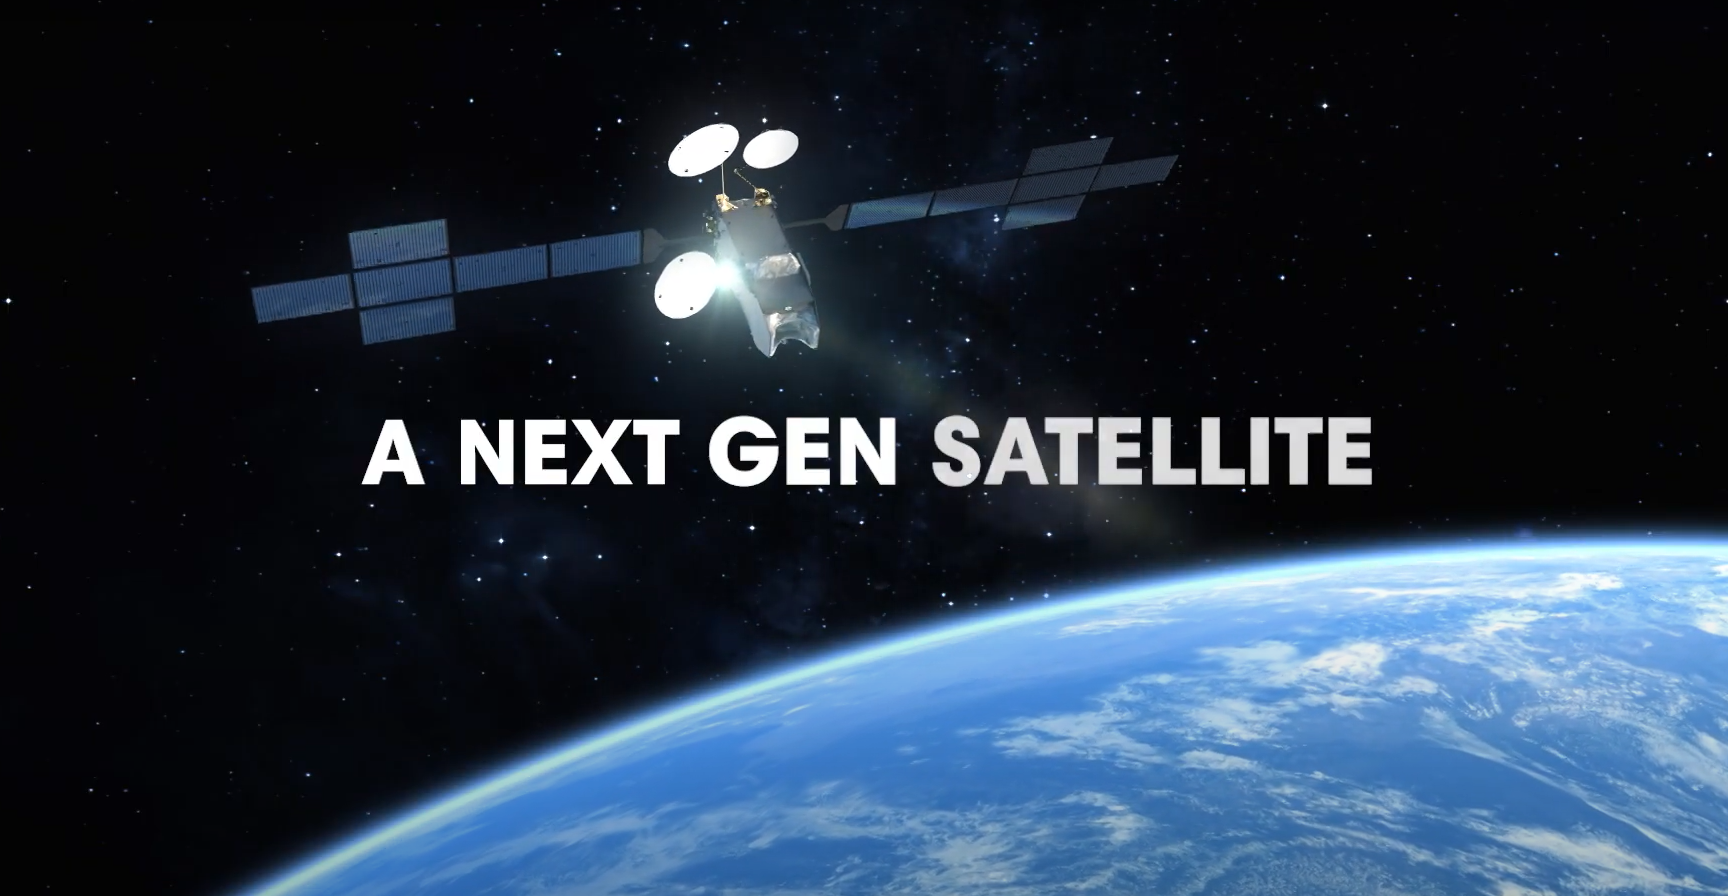 Eutelsat เตรียมเปิดตัวดาวเทียมบรอดแบนด์ความจุ 500 Gbps ลูกค้าจองผ่านค่าย Orange ฝรั่งเศส และ Telecom Italia Mobile 